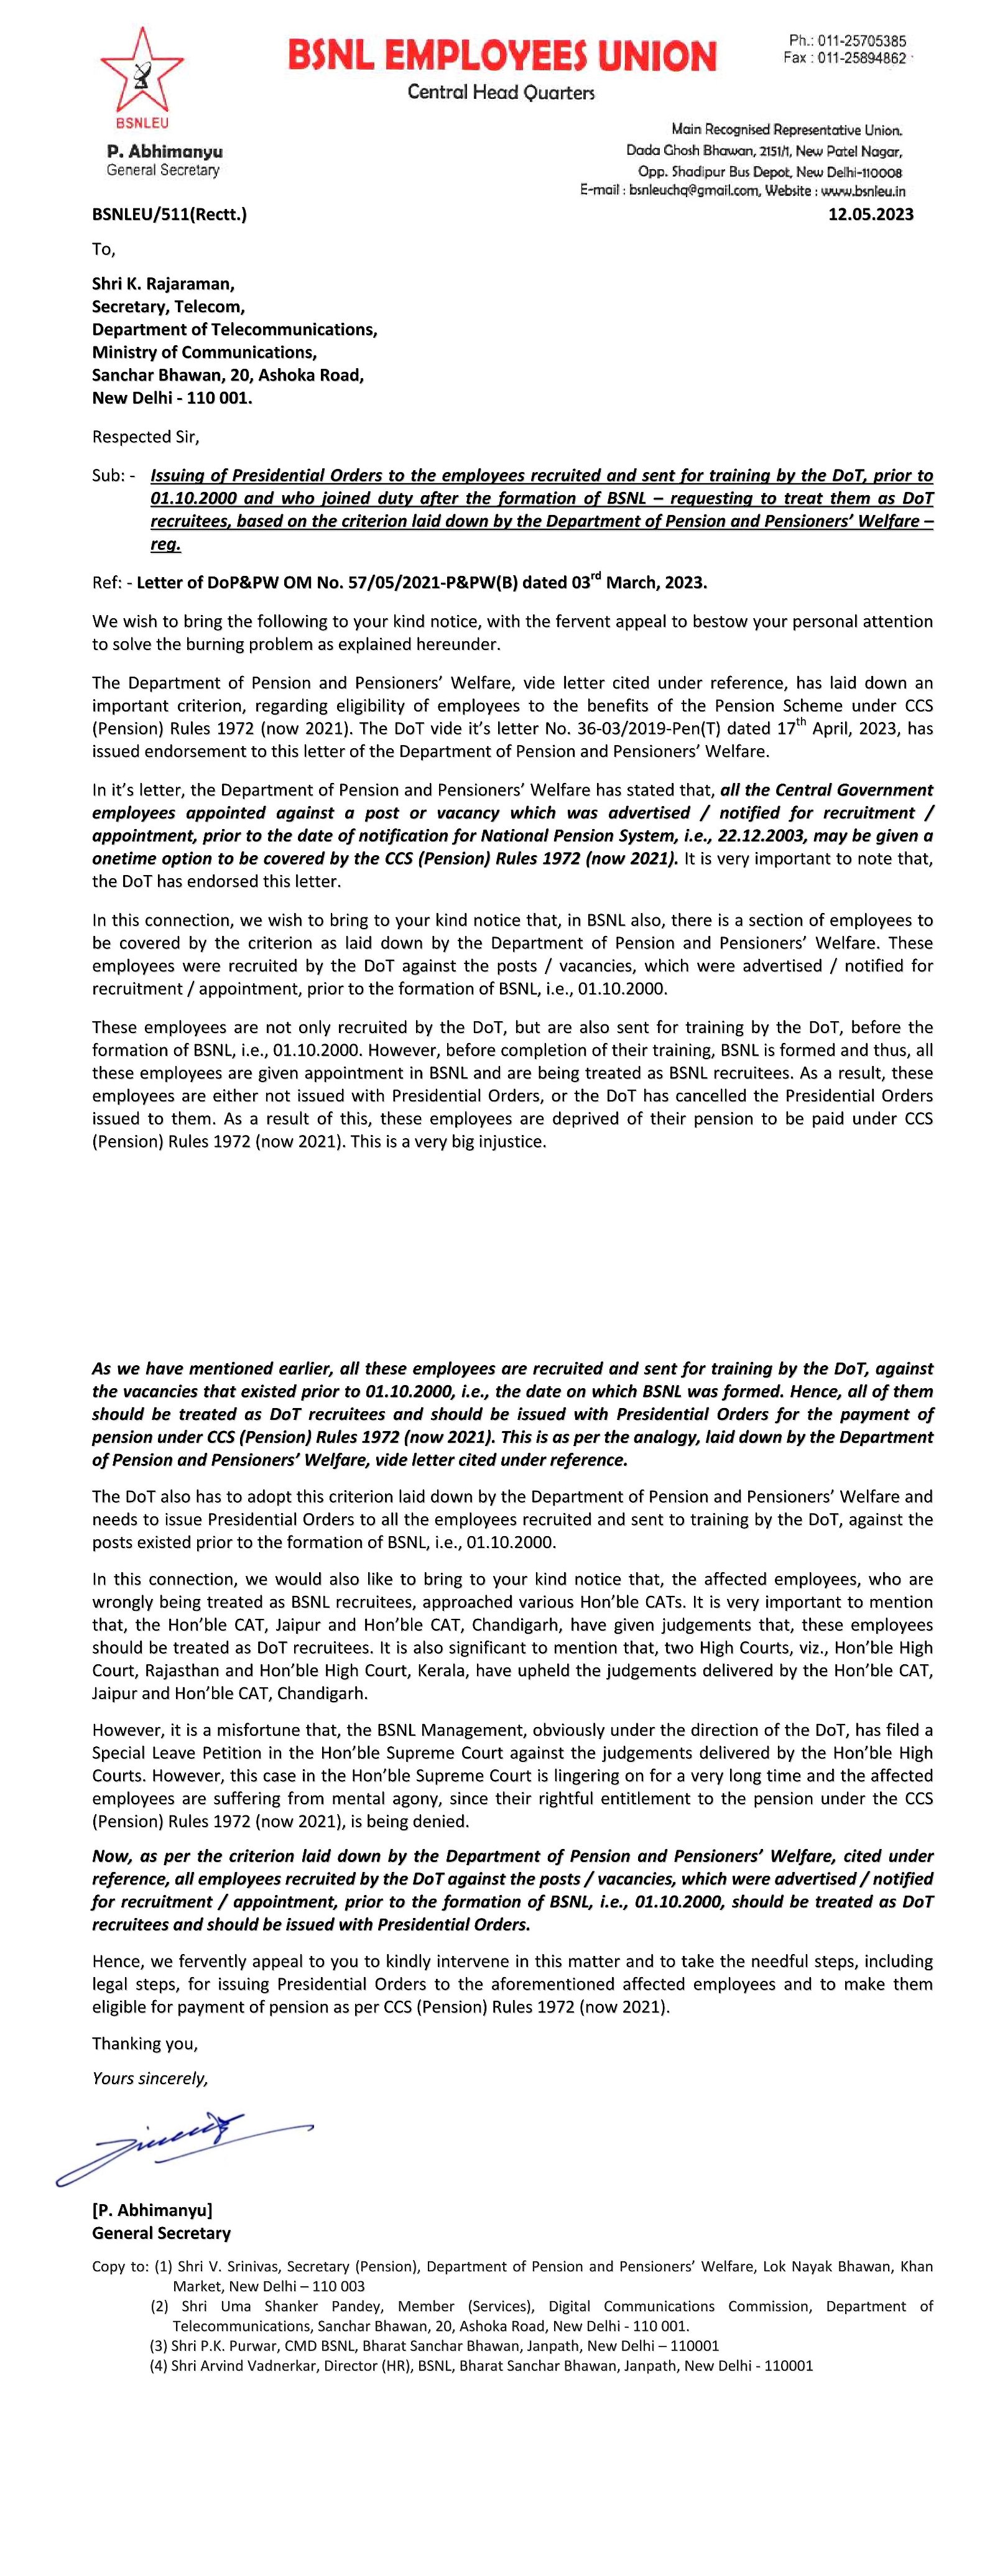 *BSNLEU ने दूरसंचार सचिवांना पत्र लिहून दूरसंचार विभागाद्वारे नियुक्त केलेल्या आणि प्रशिक्षणासाठी पाठवलेल्या, परंतु BSNL ने नियुक्त केलेल्या सर्व* *कर्मचाऱ्यांना अध्यक्षीय आदेश जारी करण्याची मागणी केली आहे.* Image 